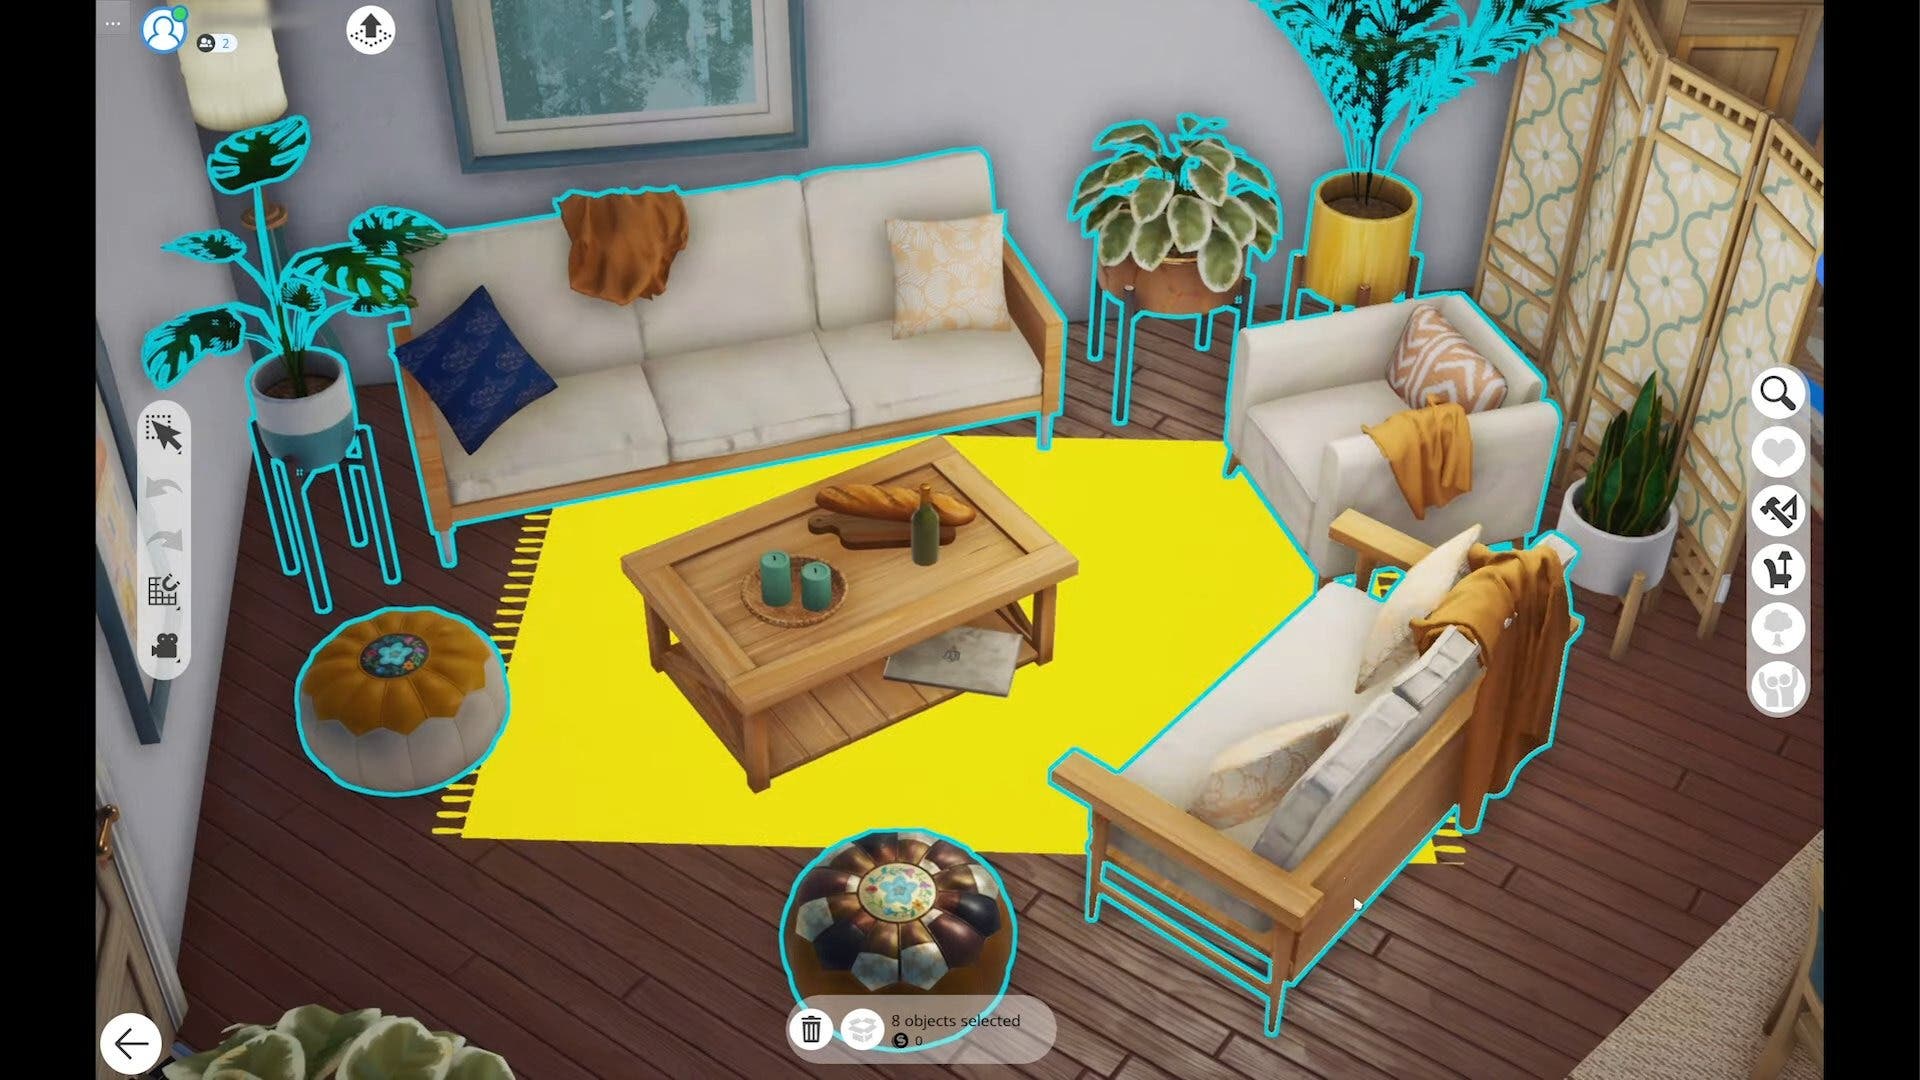 Imagens de The Sims 5 em estágio inicial de desenvolvimento.